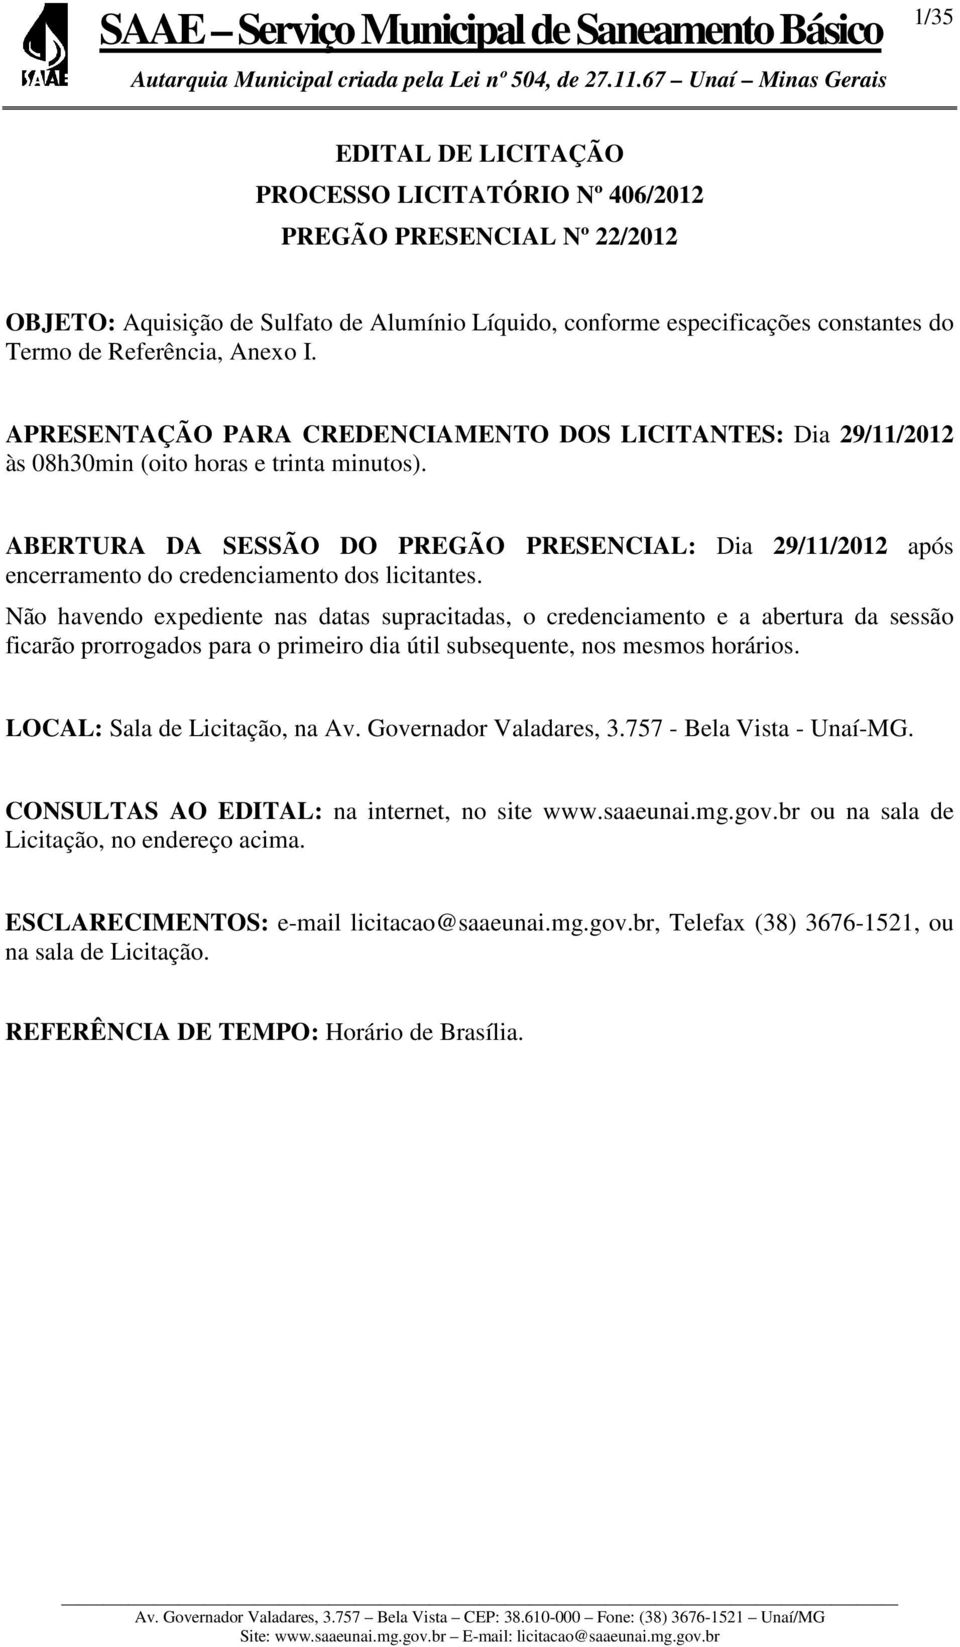 ABERTURA DA SESSÃO DO PREGÃO PRESENCIAL: Dia 29/11/2012 após encerramento do credenciamento dos licitantes.